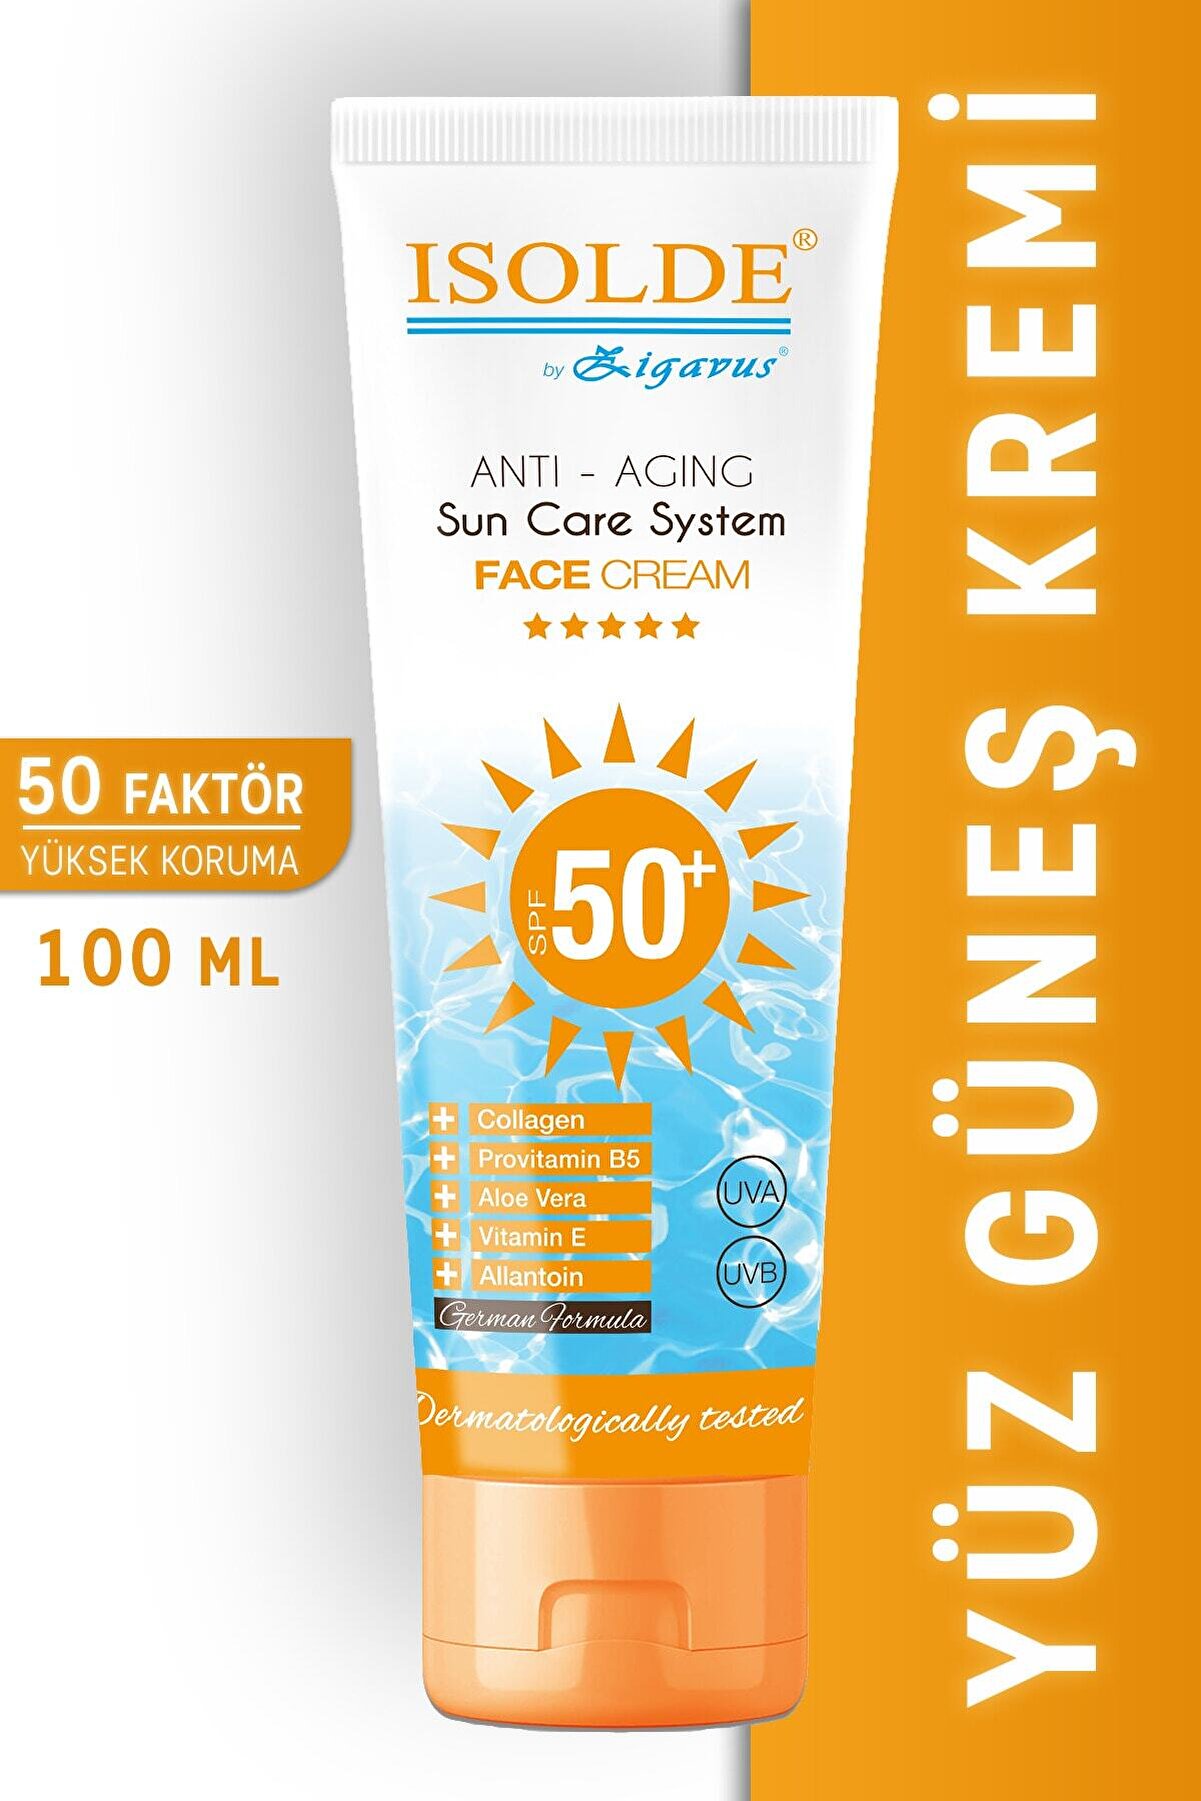 Zigavus Isolde Güneş Koruyucu Anti-Aging Yüz Kremi 50+ 100 ml